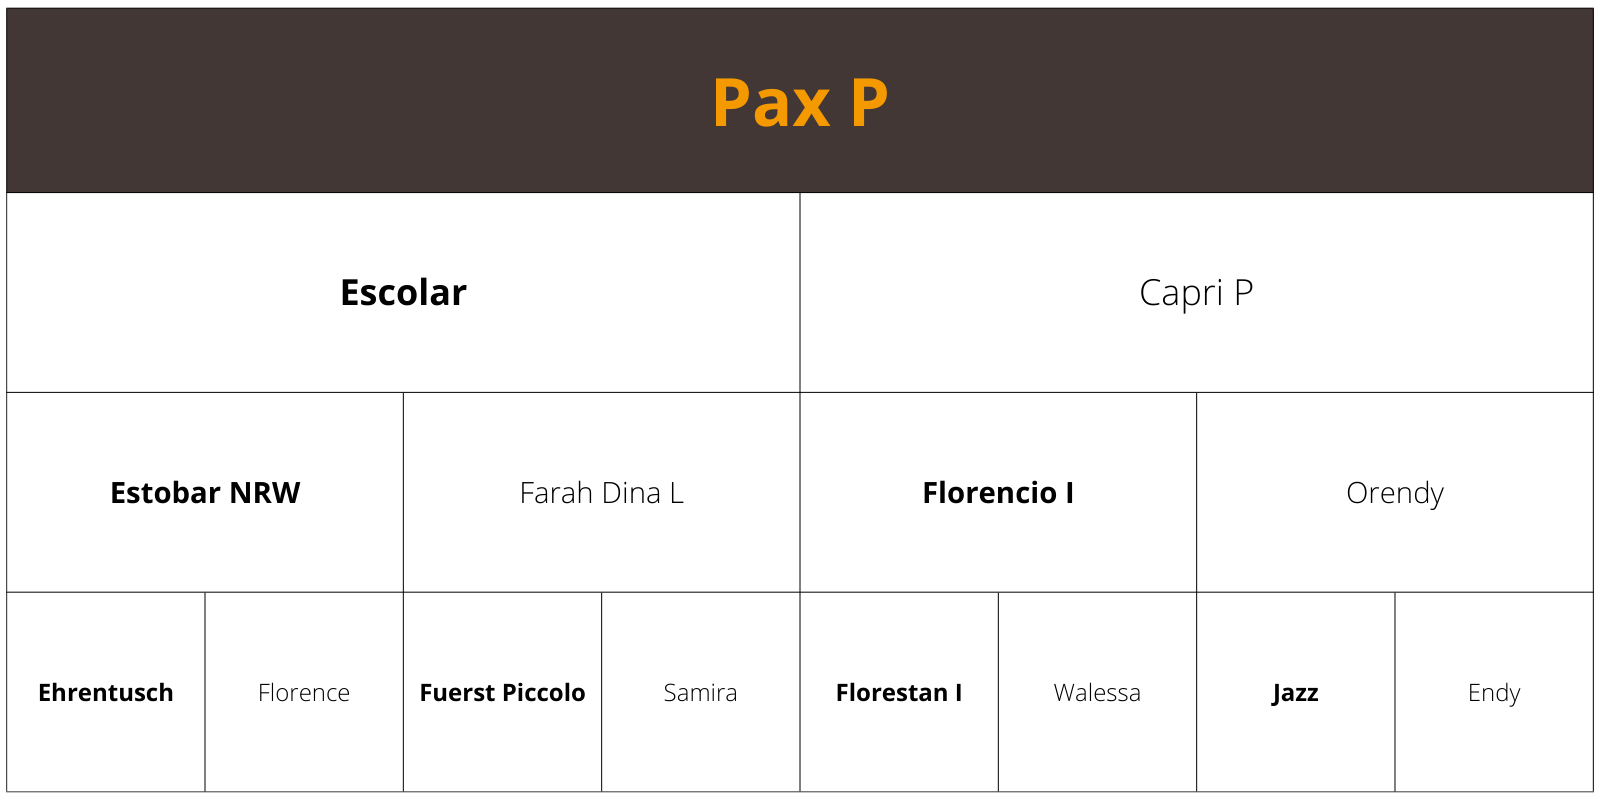 Pax P